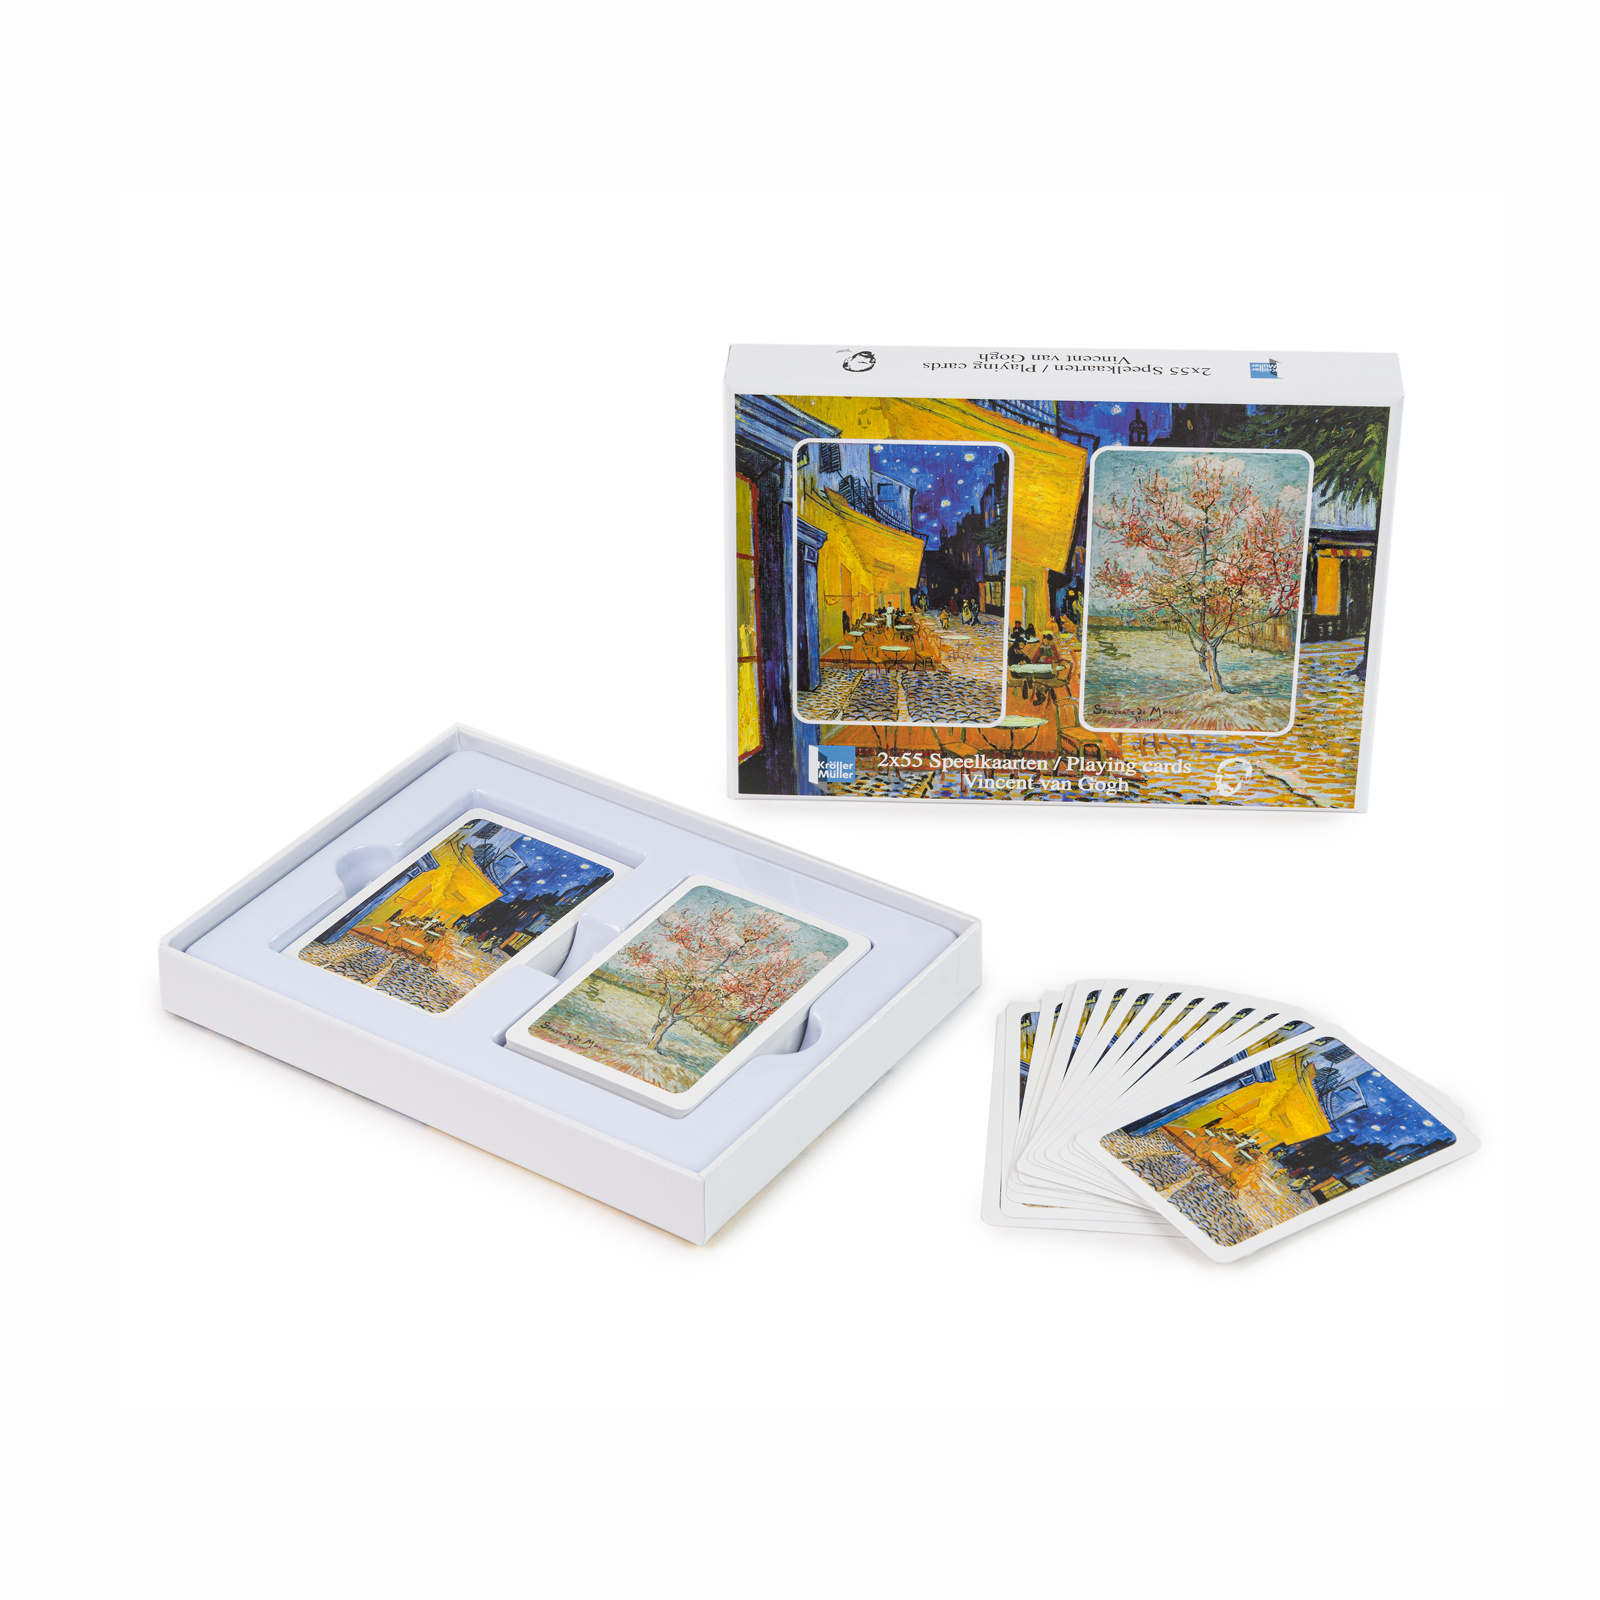 Ambient Arena complexiteit Speelkaarten Van Gogh - Kröller-Müller Museum webshop